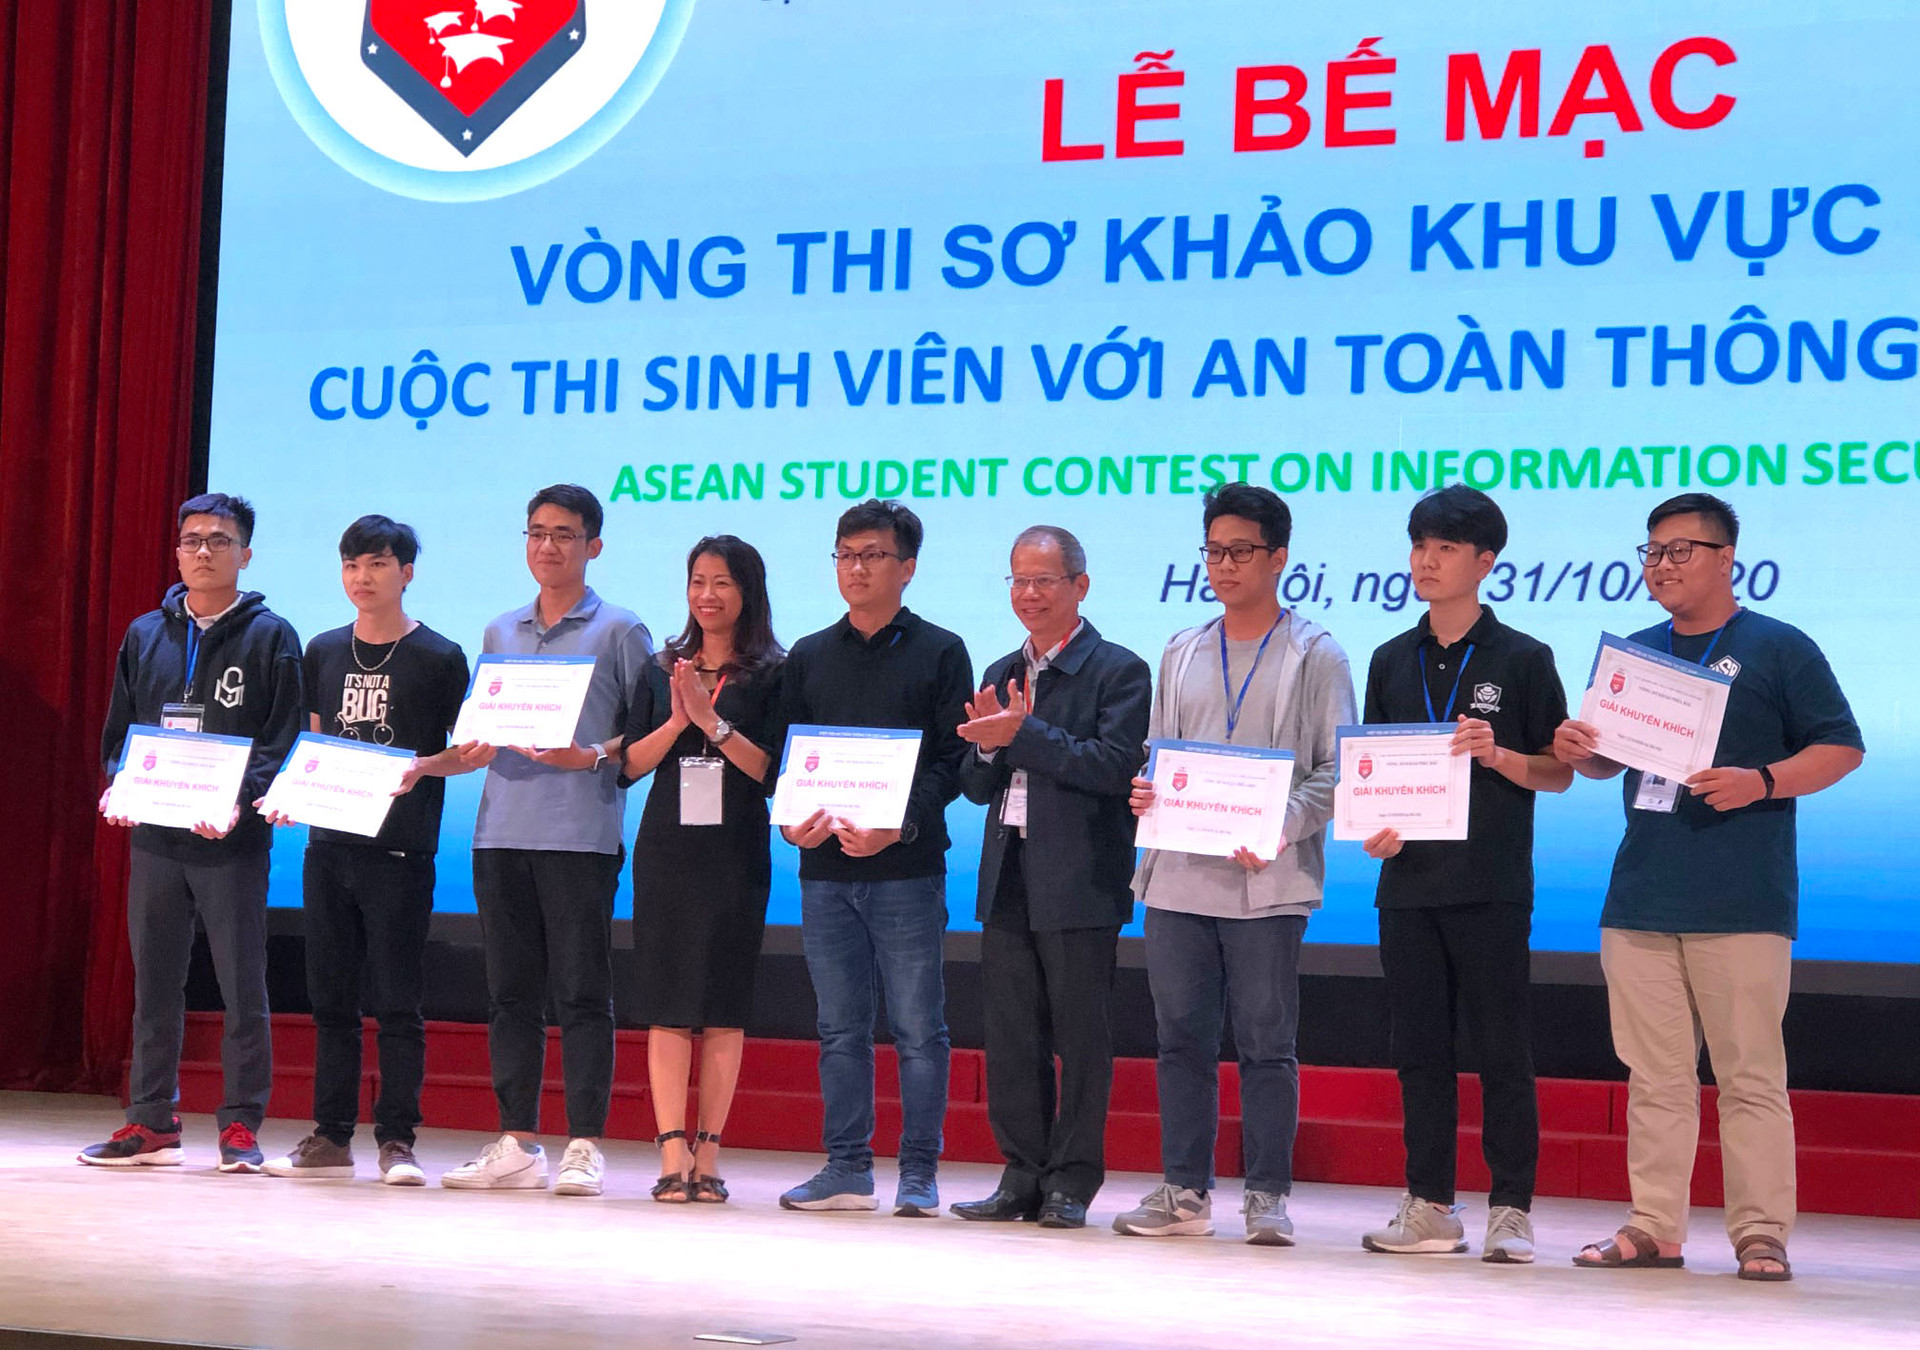 10 đội của Việt Nam vào chung khảo cuộc thi sinh viên với ATTT ASEAN năm 2020 - Ảnh 6.